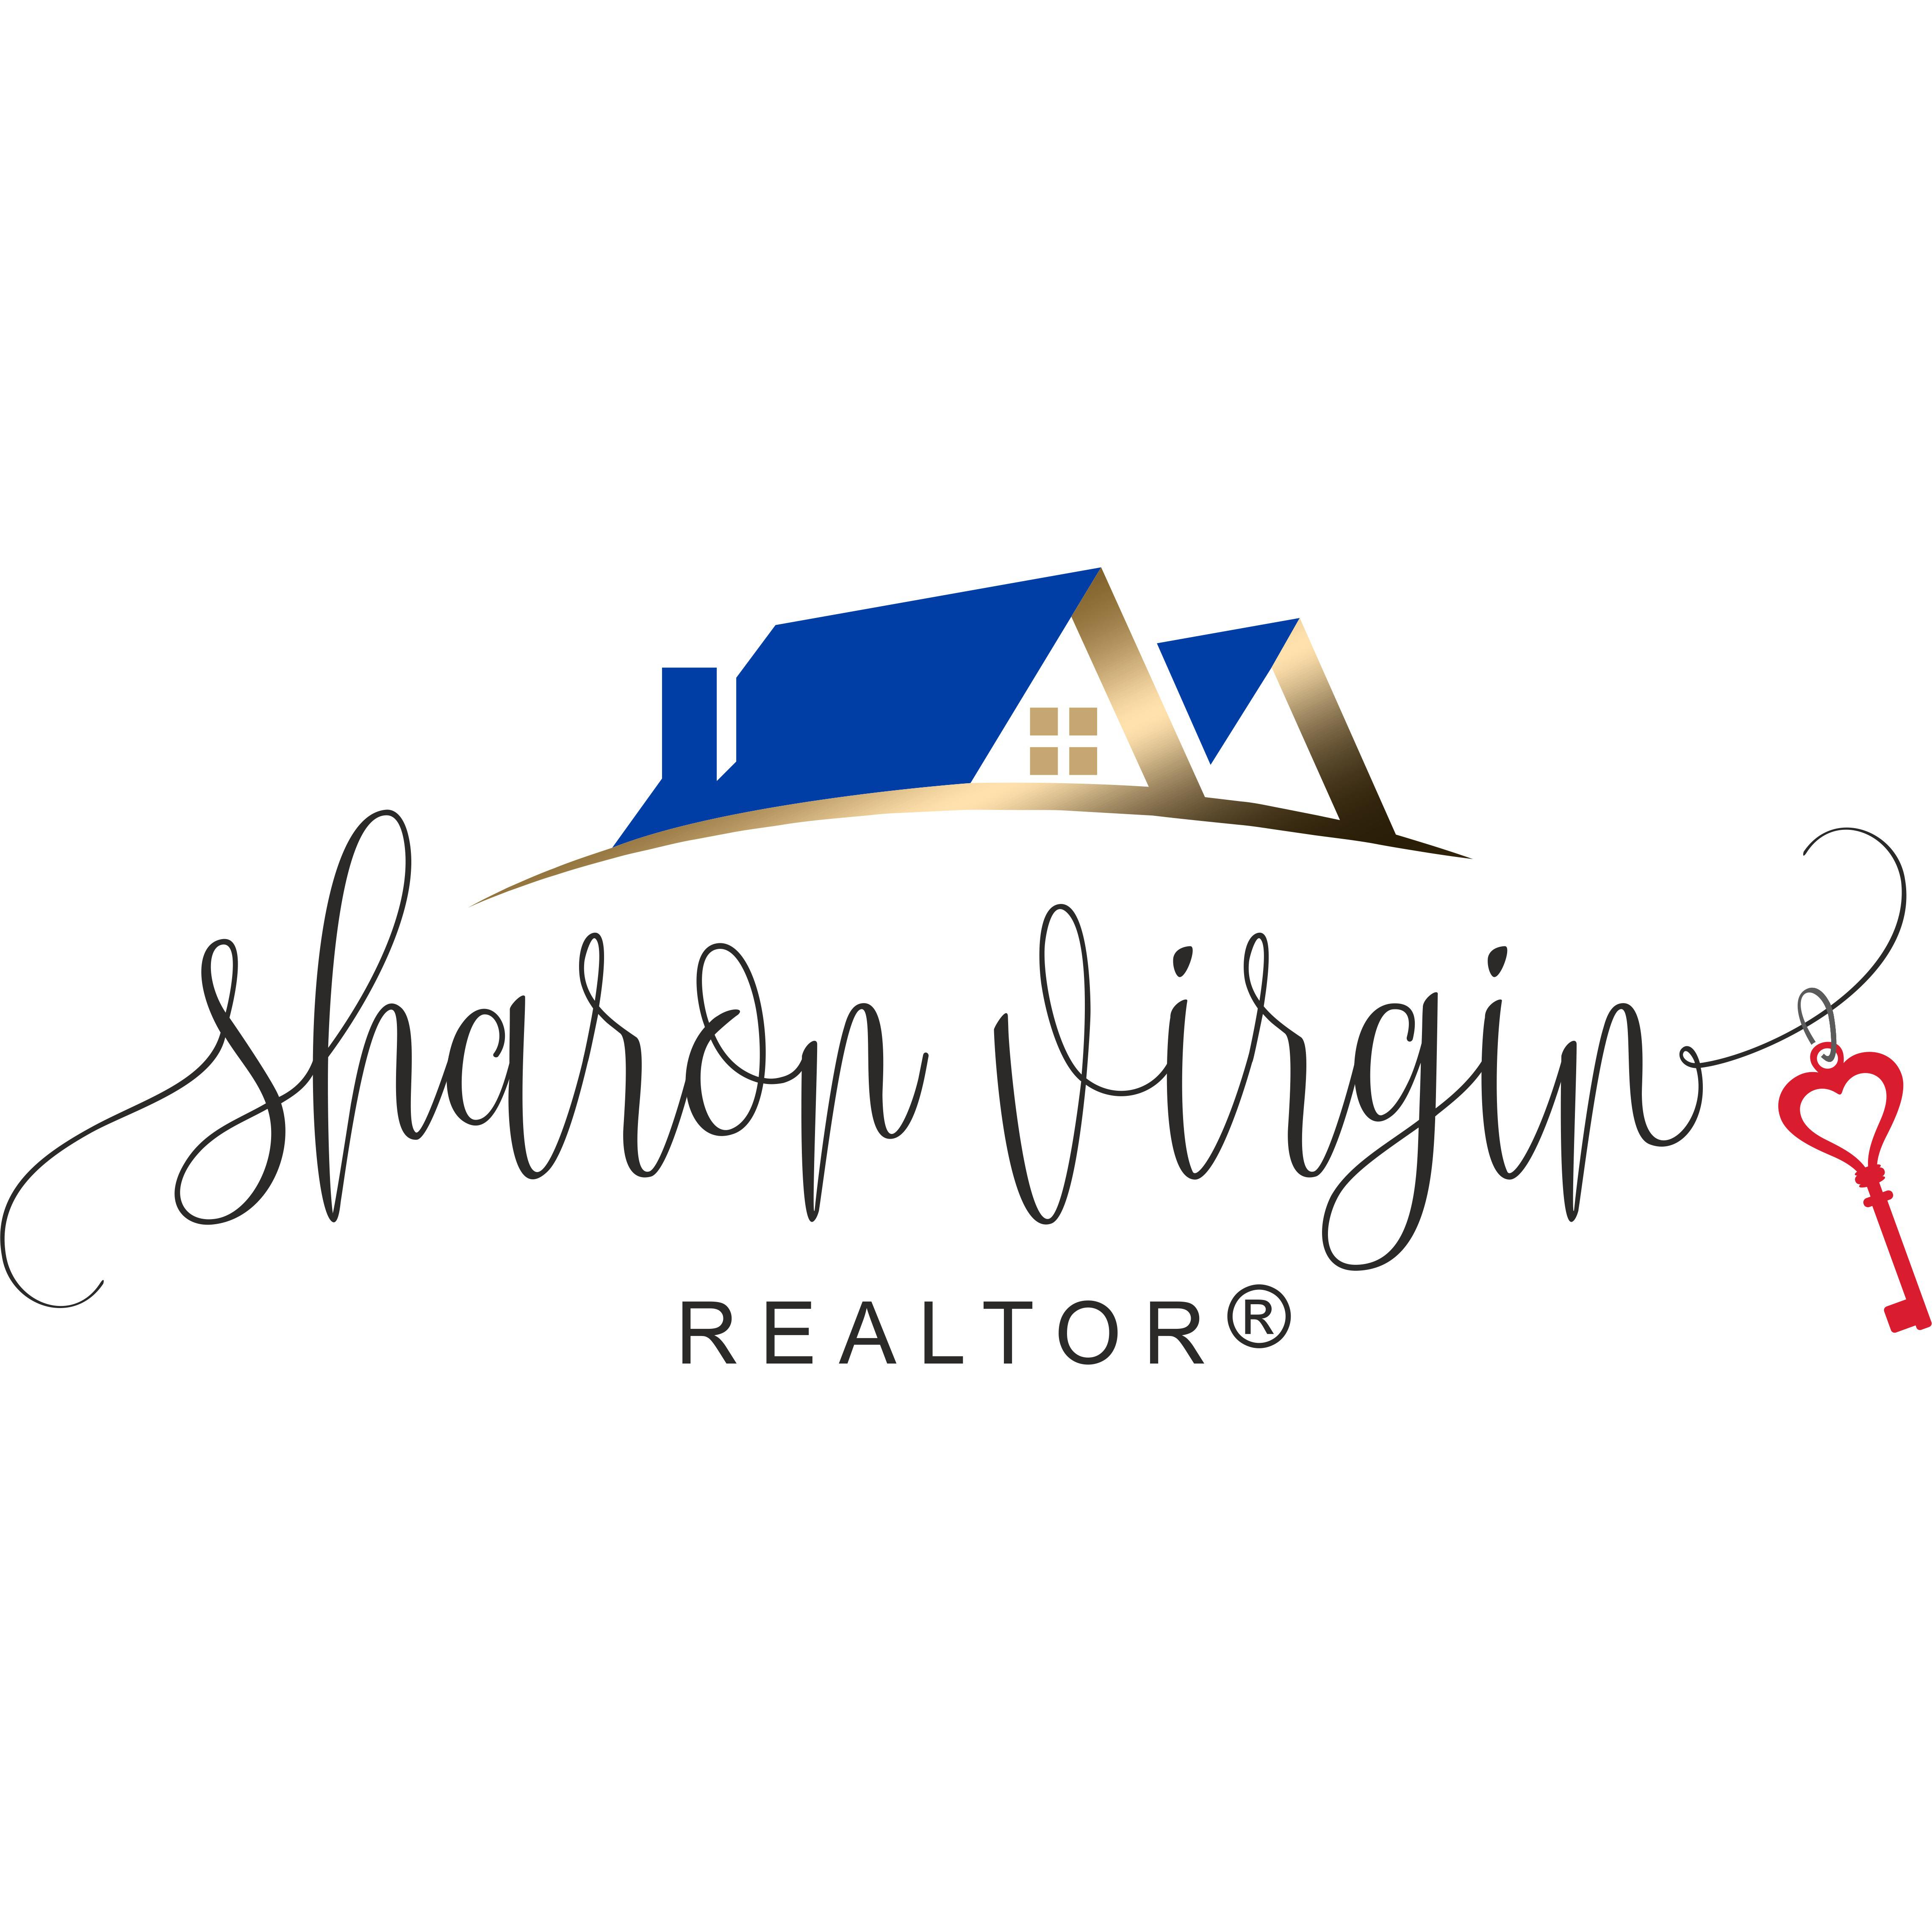 Sharon Virgin, REALTOR - 406 Real Estate Gals